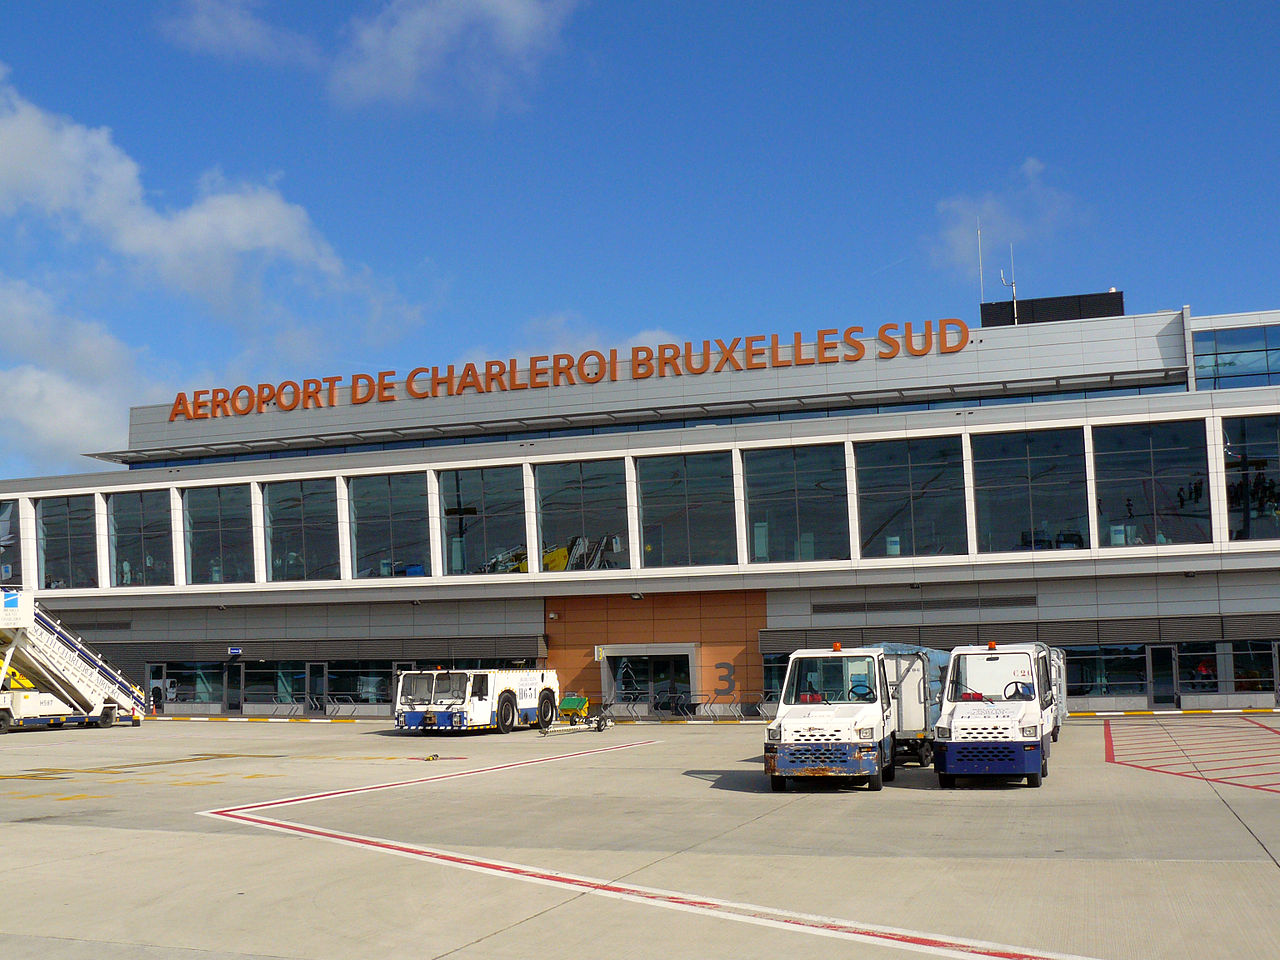 Belgique, pas de vol ce 20 avril matin, au départ de Charleroi